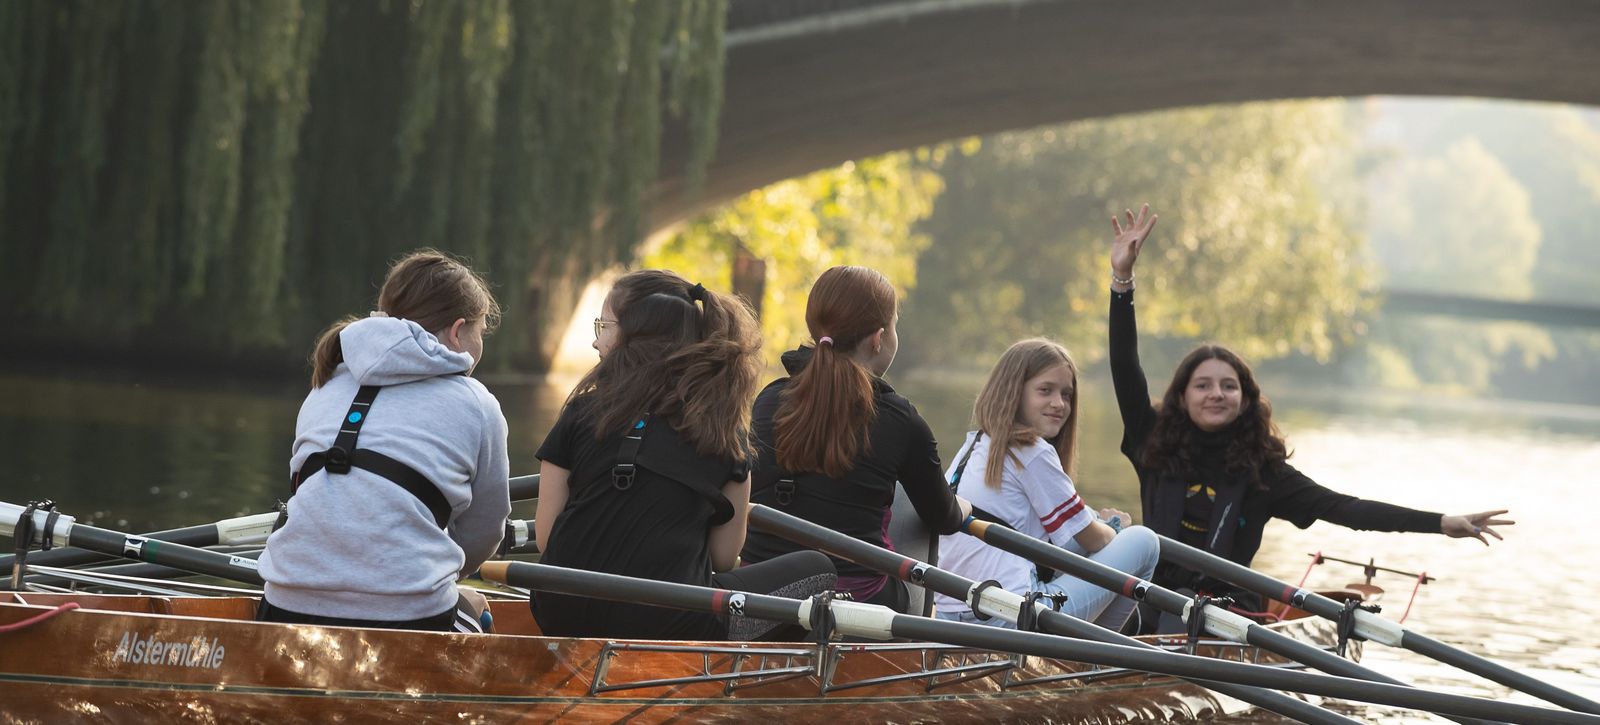 Fünf Schülerinnen und Schüler rudern in einem Boot unter einer Brücke hindurch.